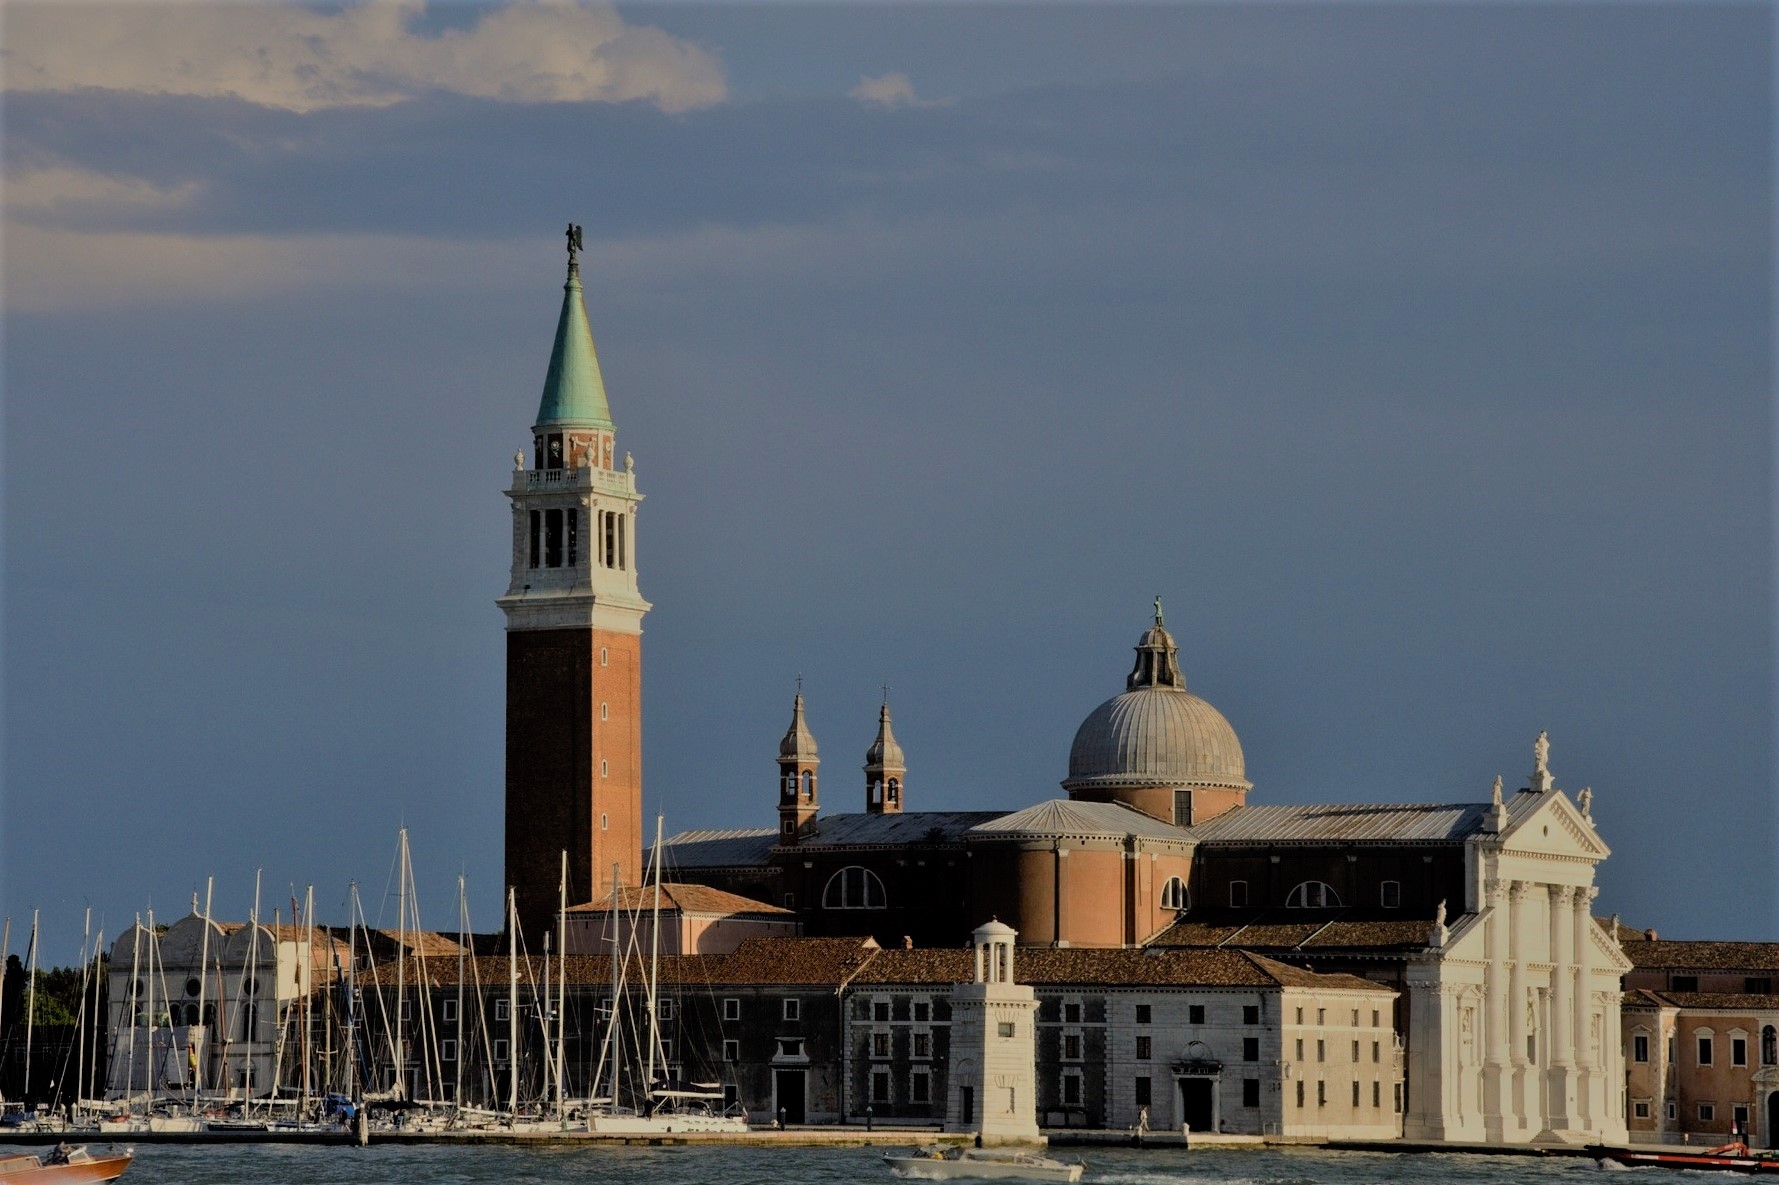 ヴェネチアの孤島、サン・ジョルジョ・マッジョーレ島の鐘楼